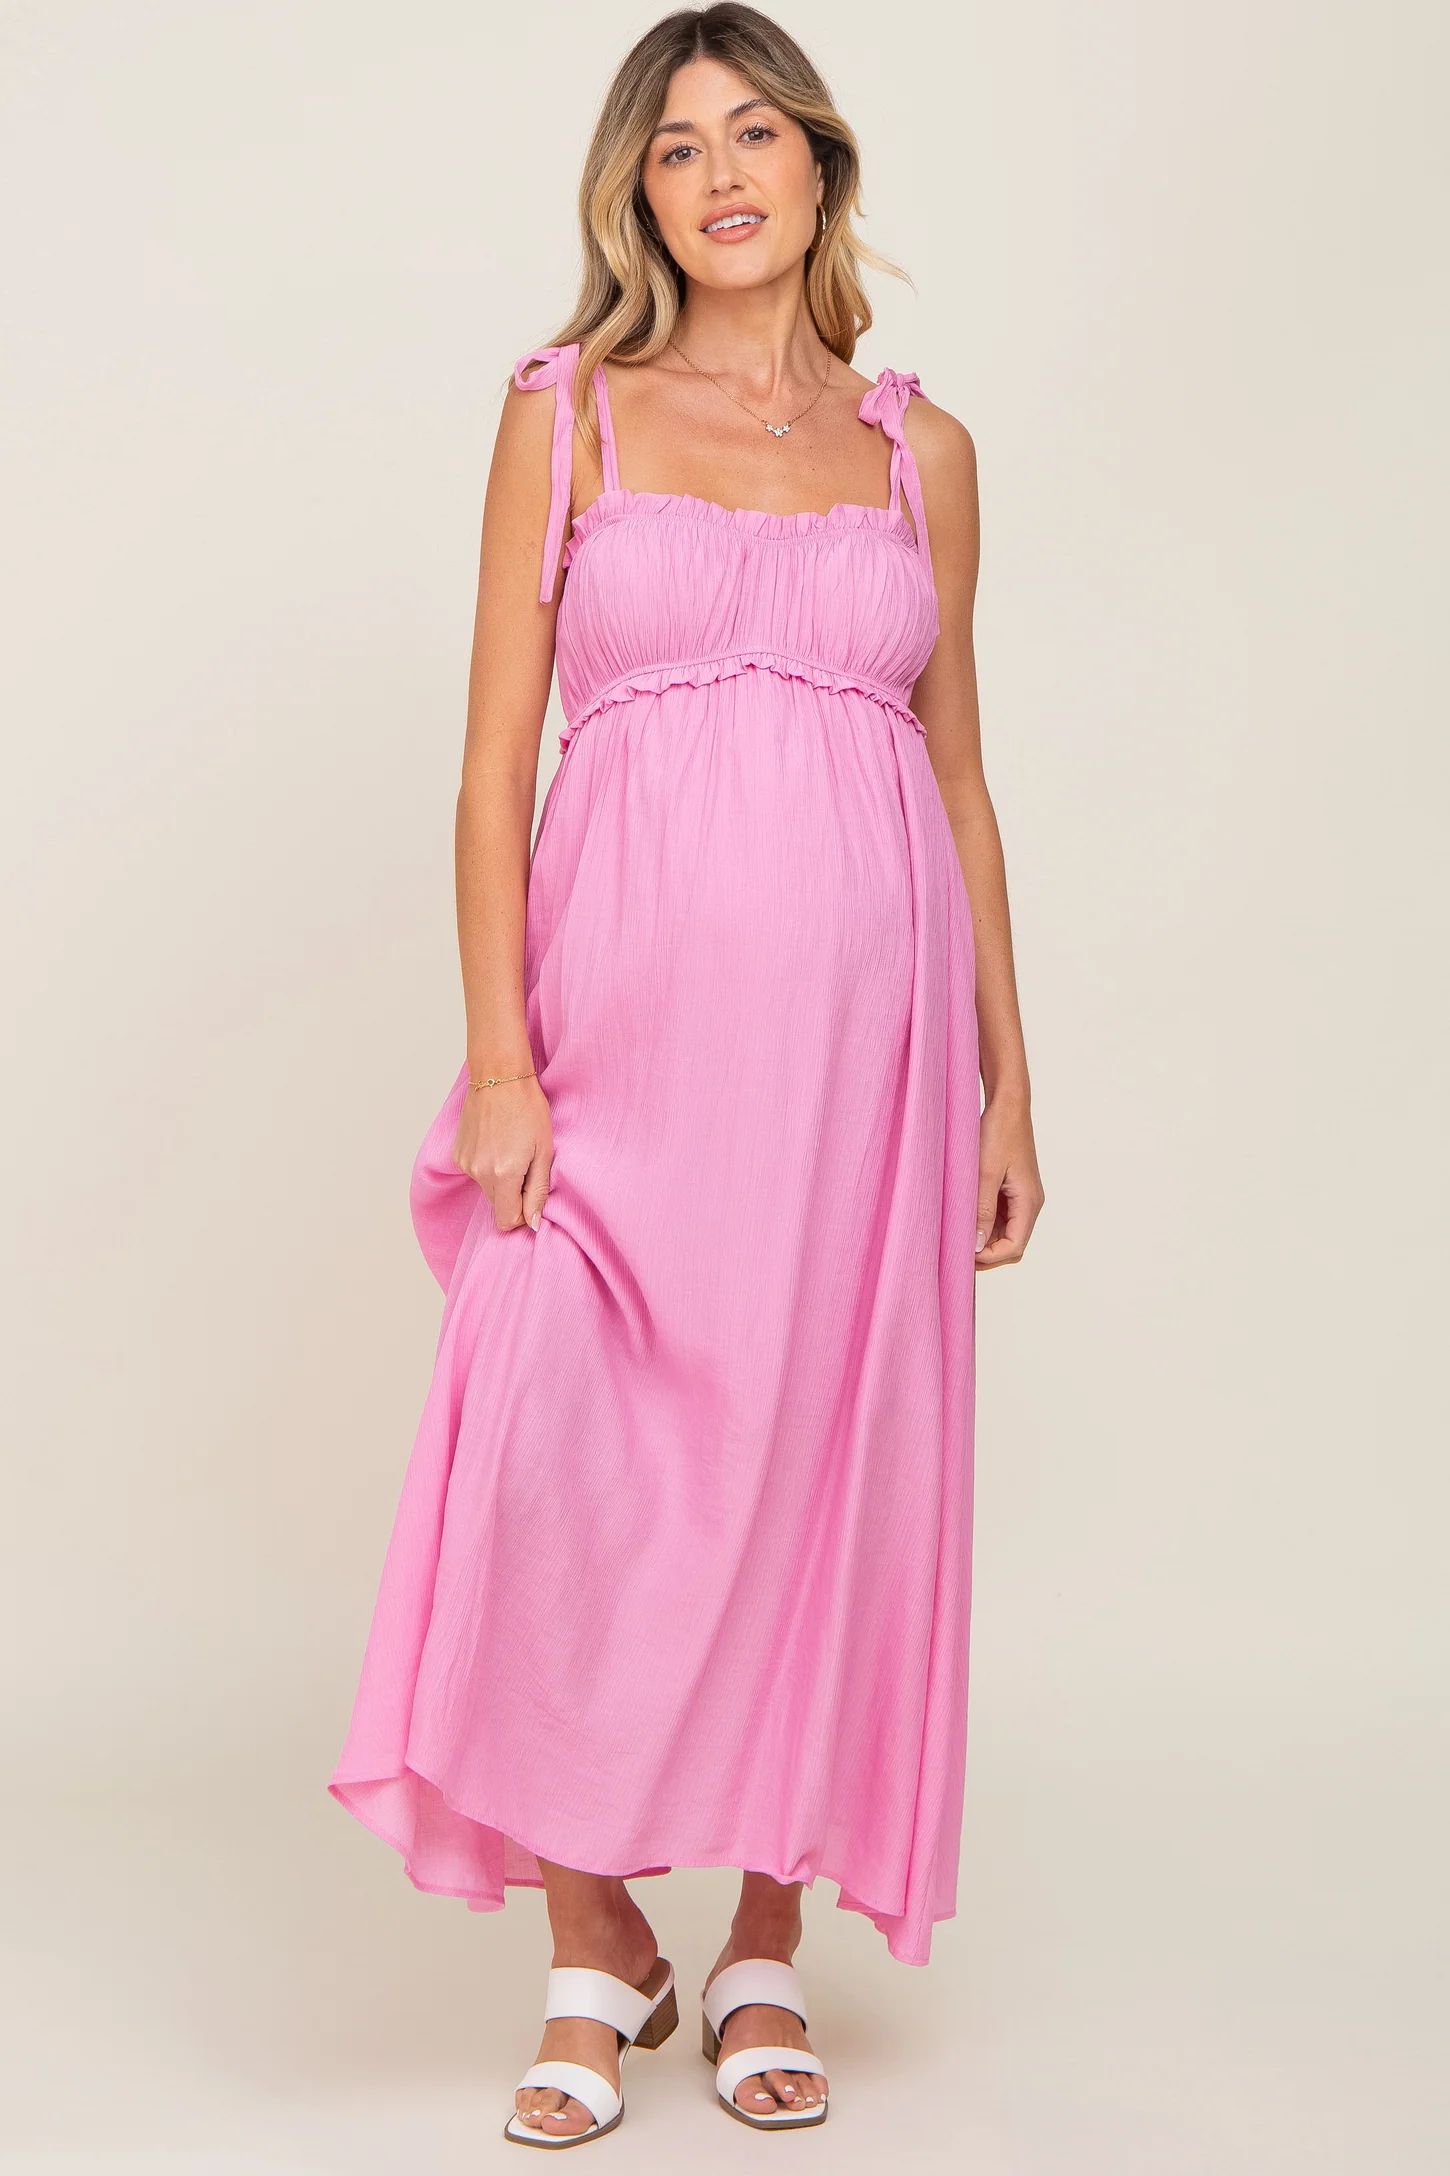 Turquoise Sleeveless Ruffle Trim Maternity Maxi Dress | PinkBlush Maternity